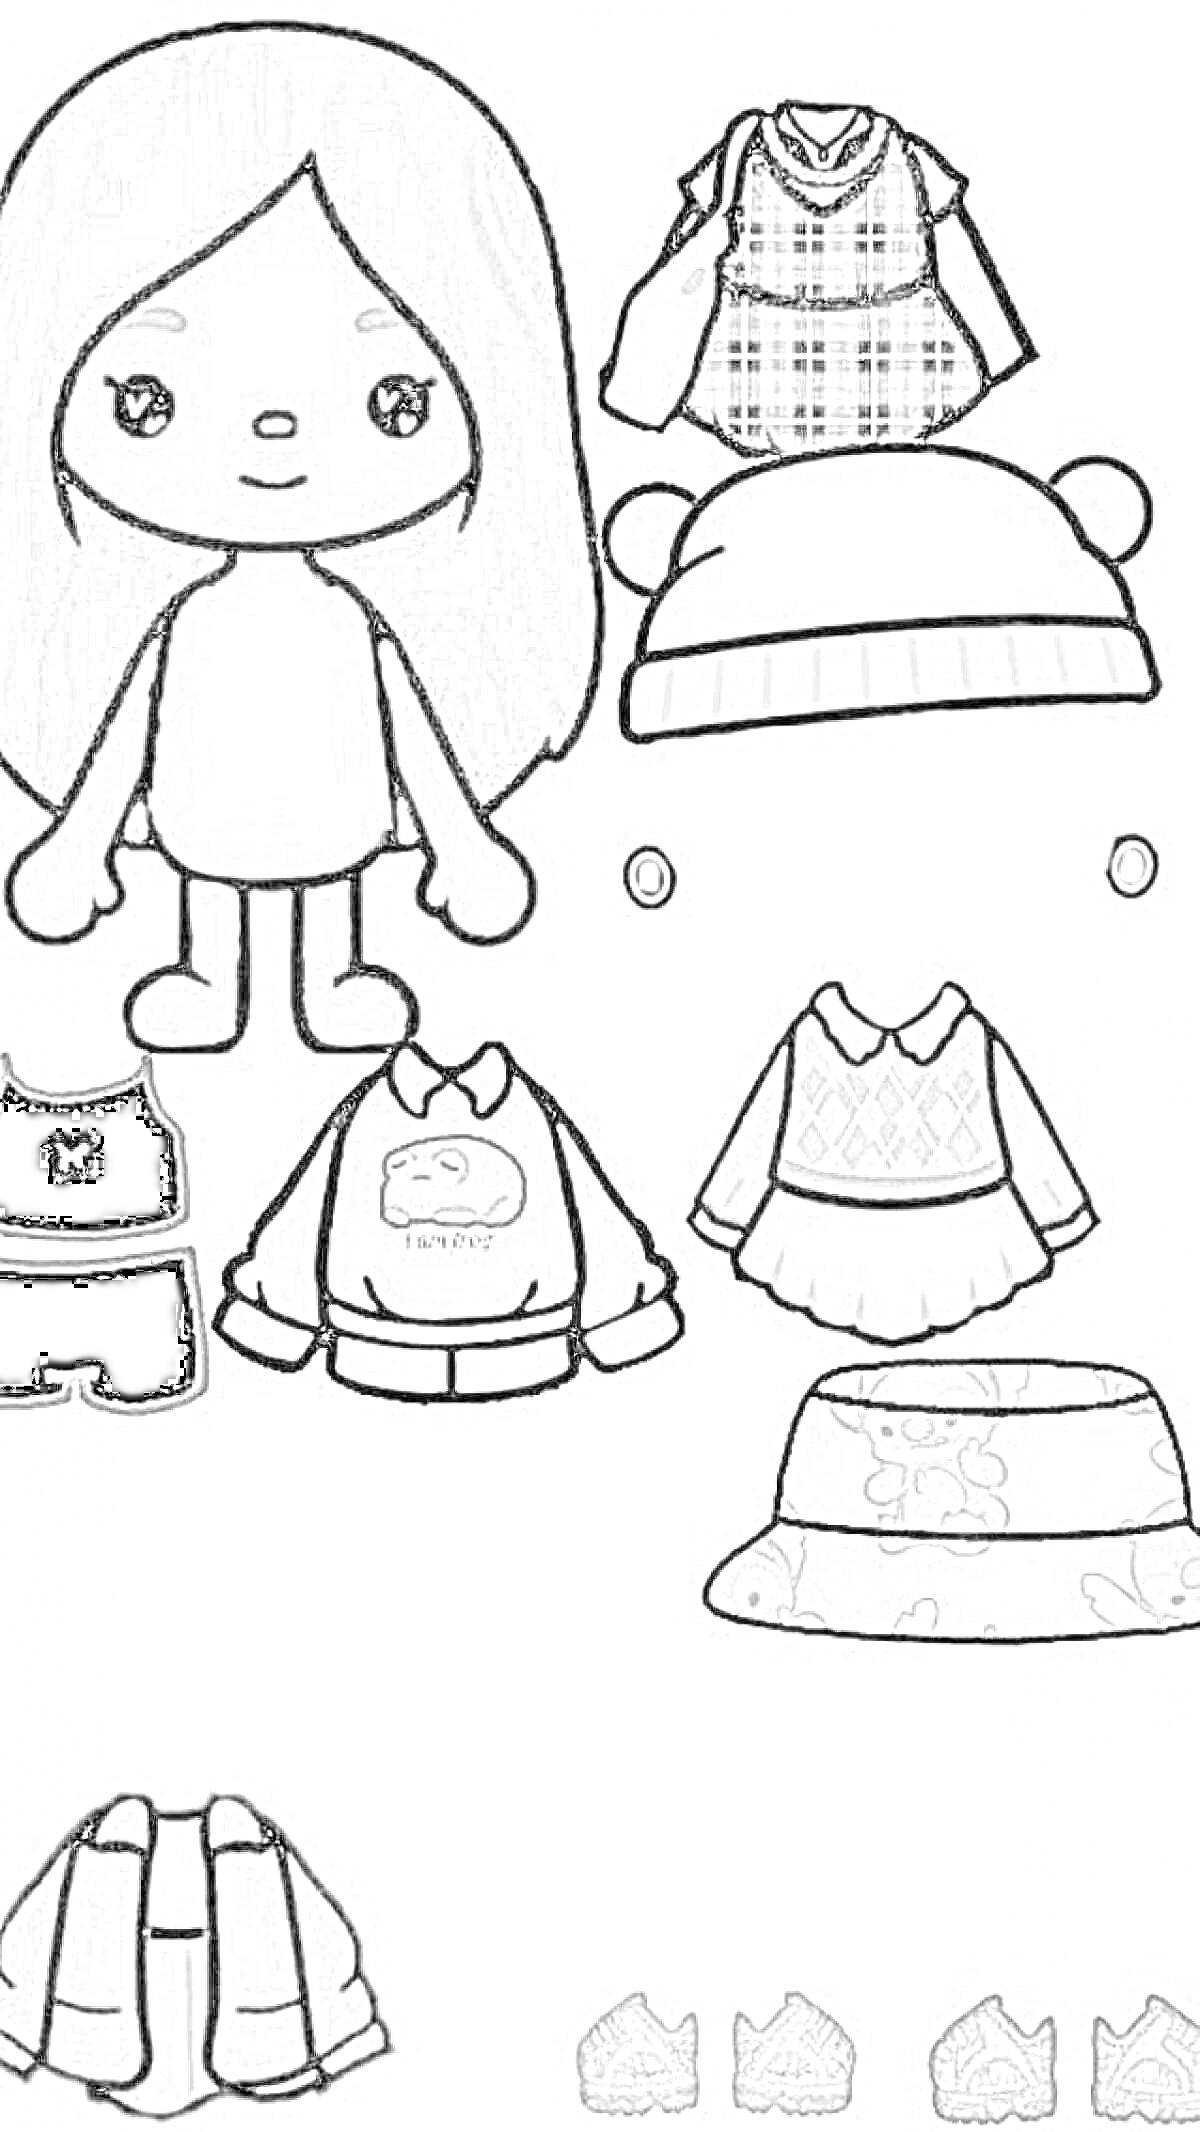 Раскраска Девочка-персонаж без одежды с волосами, шляпа с медвежьими ушками, серьги, платье-костюм, толстовка с рисунком, платье с узором, шляпа с узором, пиджак, спортивные шорты и обувь